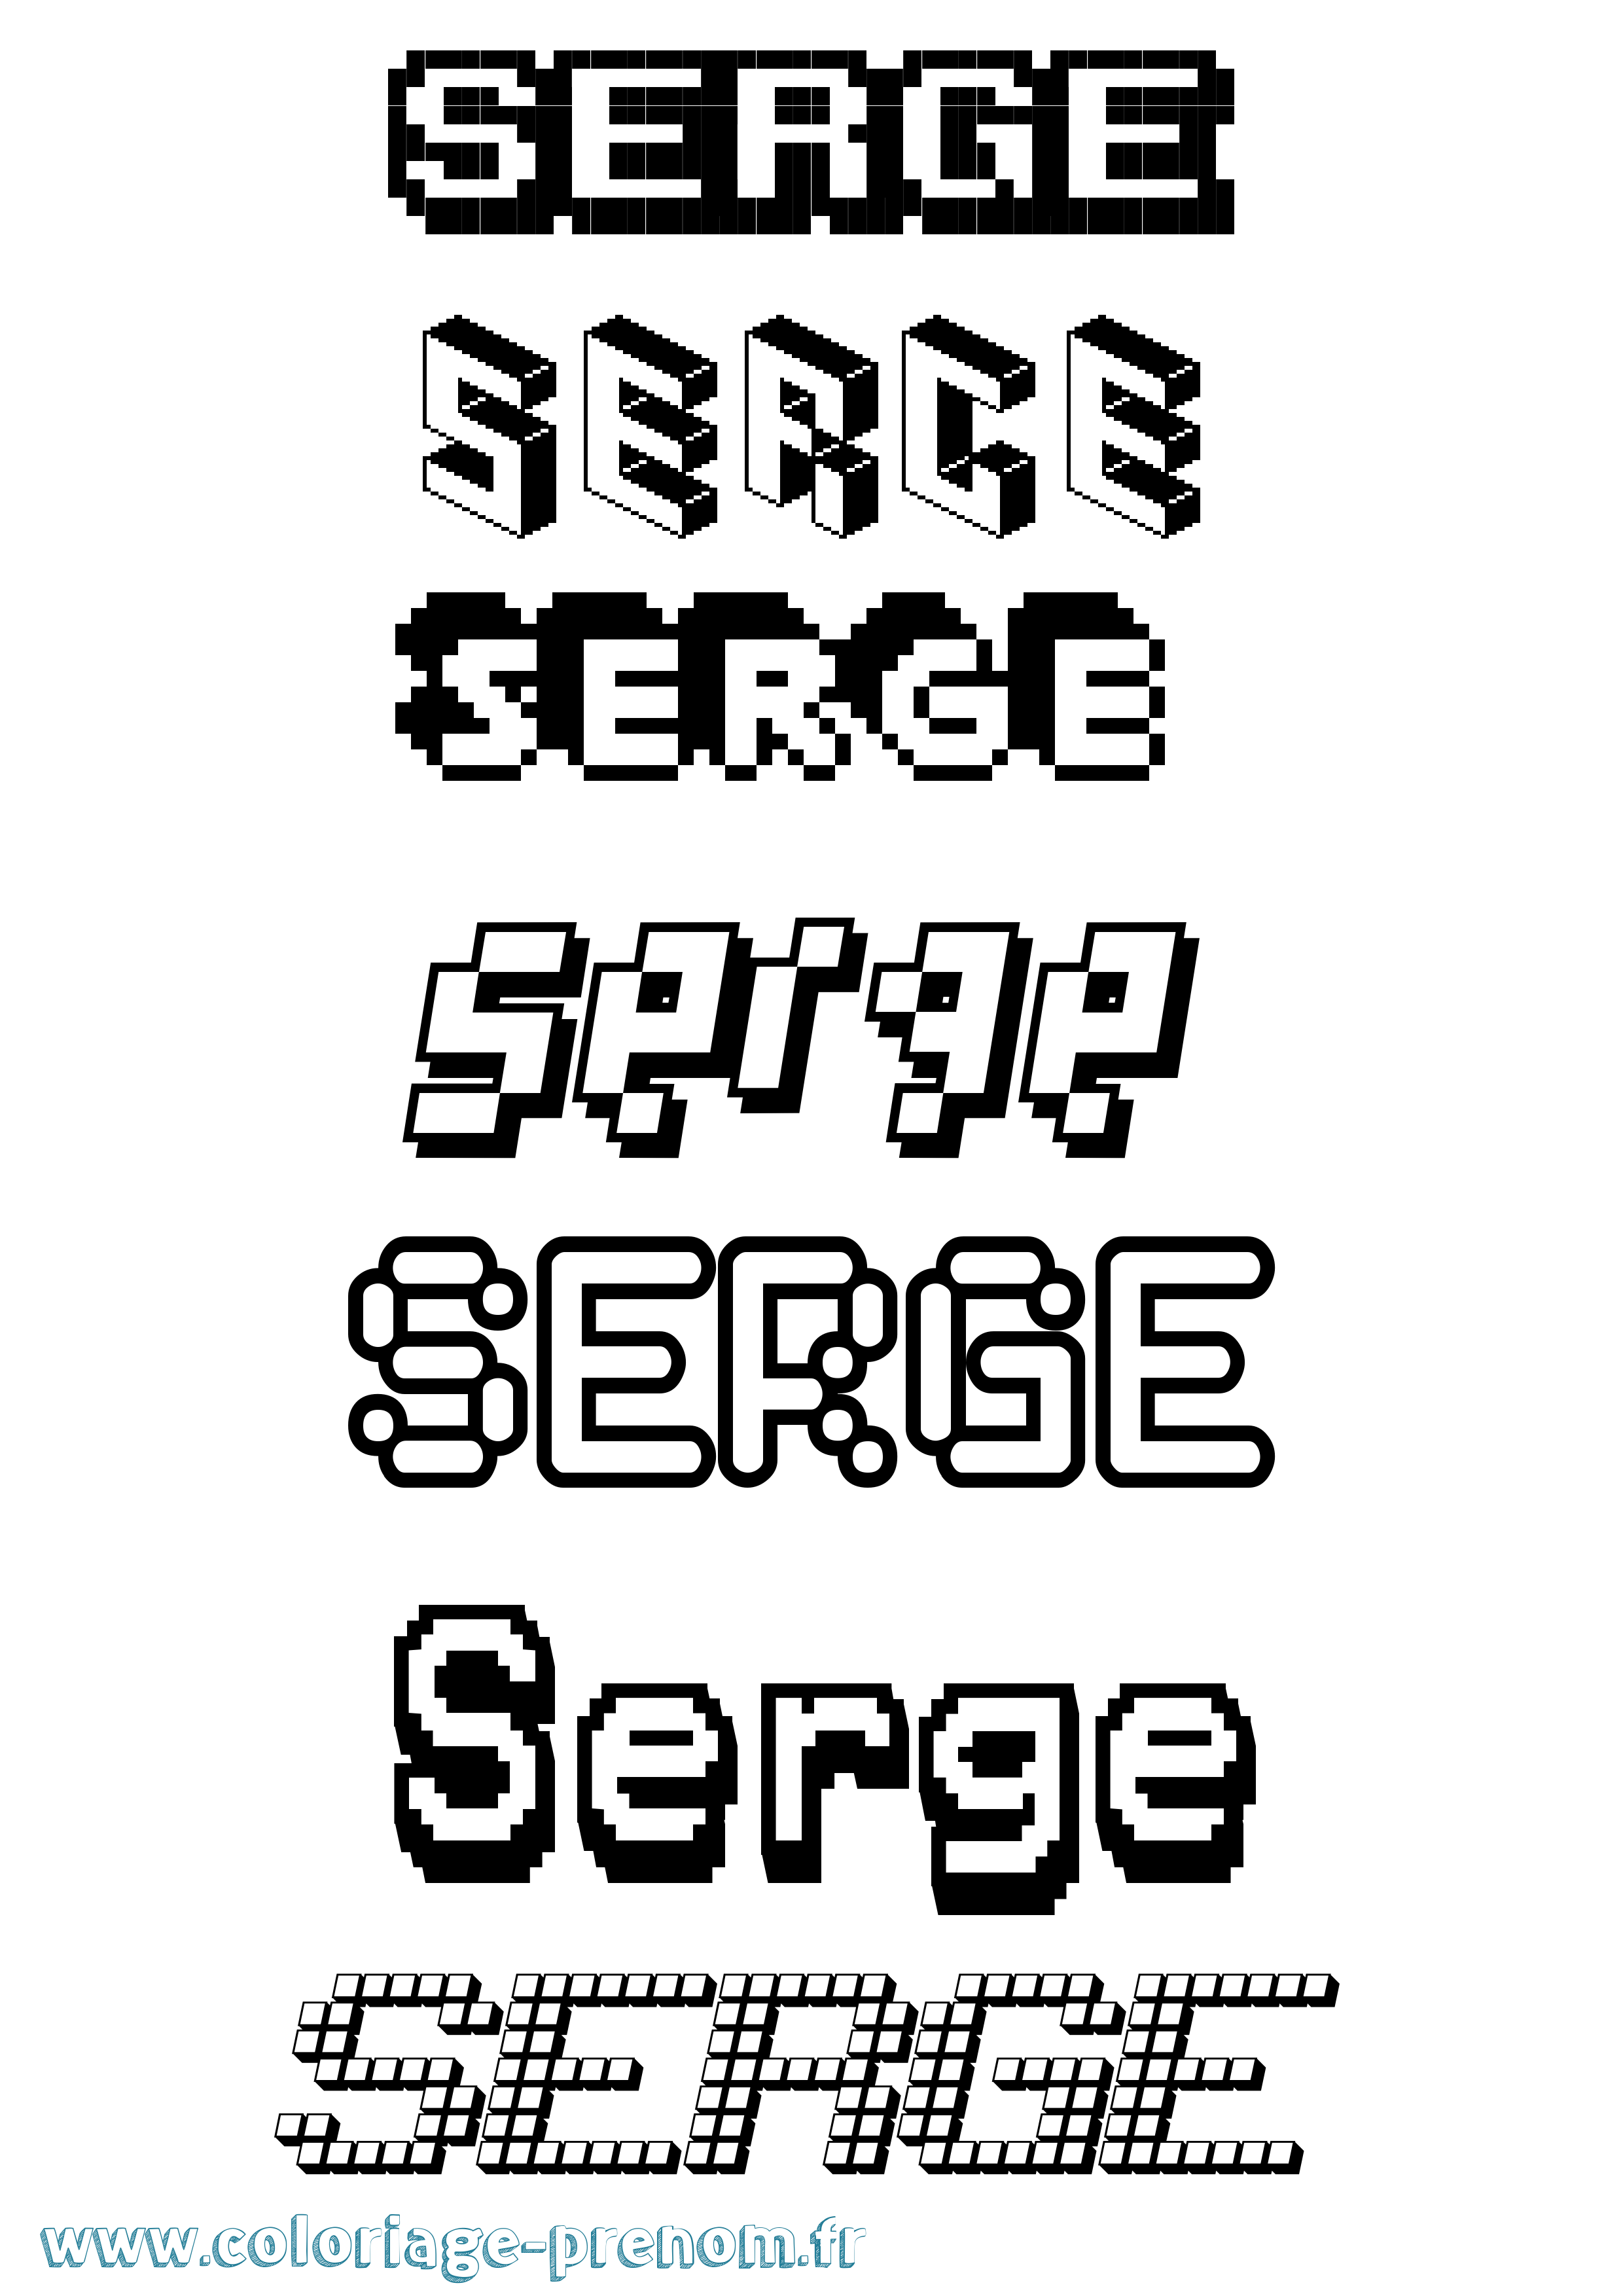 Coloriage prénom Serge Pixel